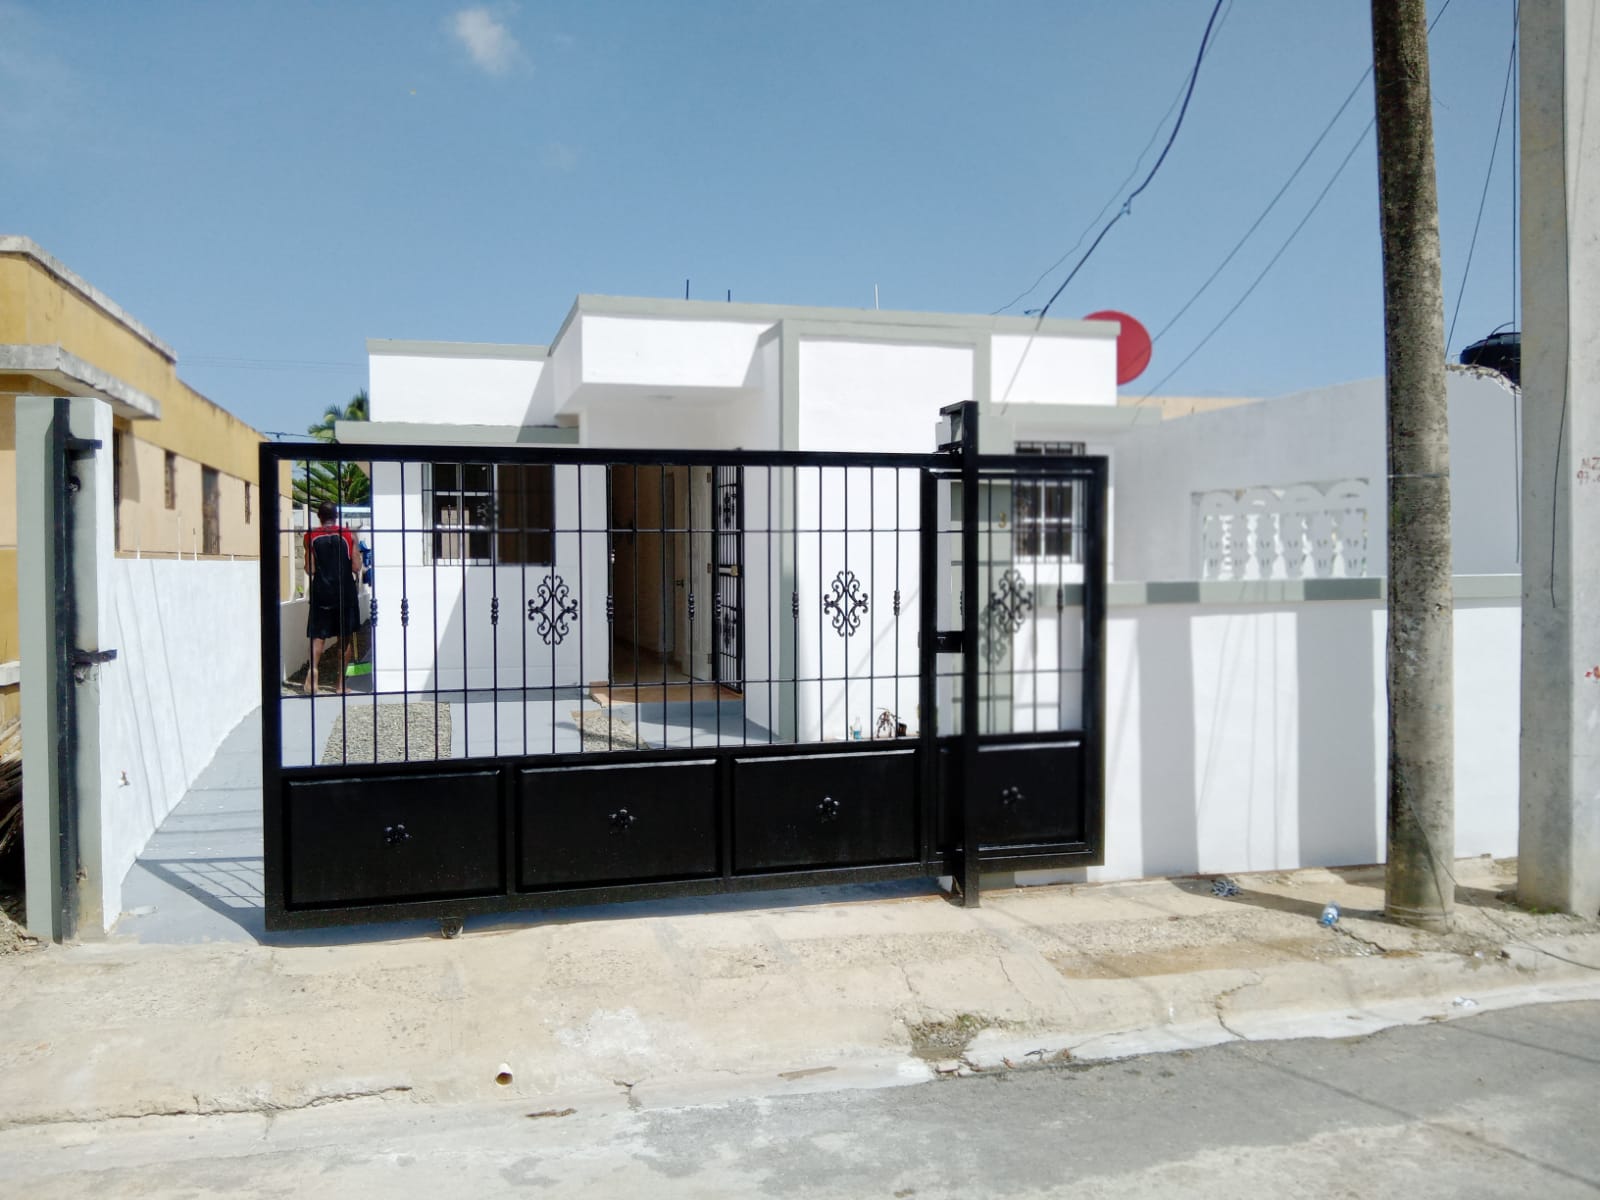 Casa de Oportunidad ubicada en Ciudad Satelite Autopista Duarte Foto 7225470-1.jpg